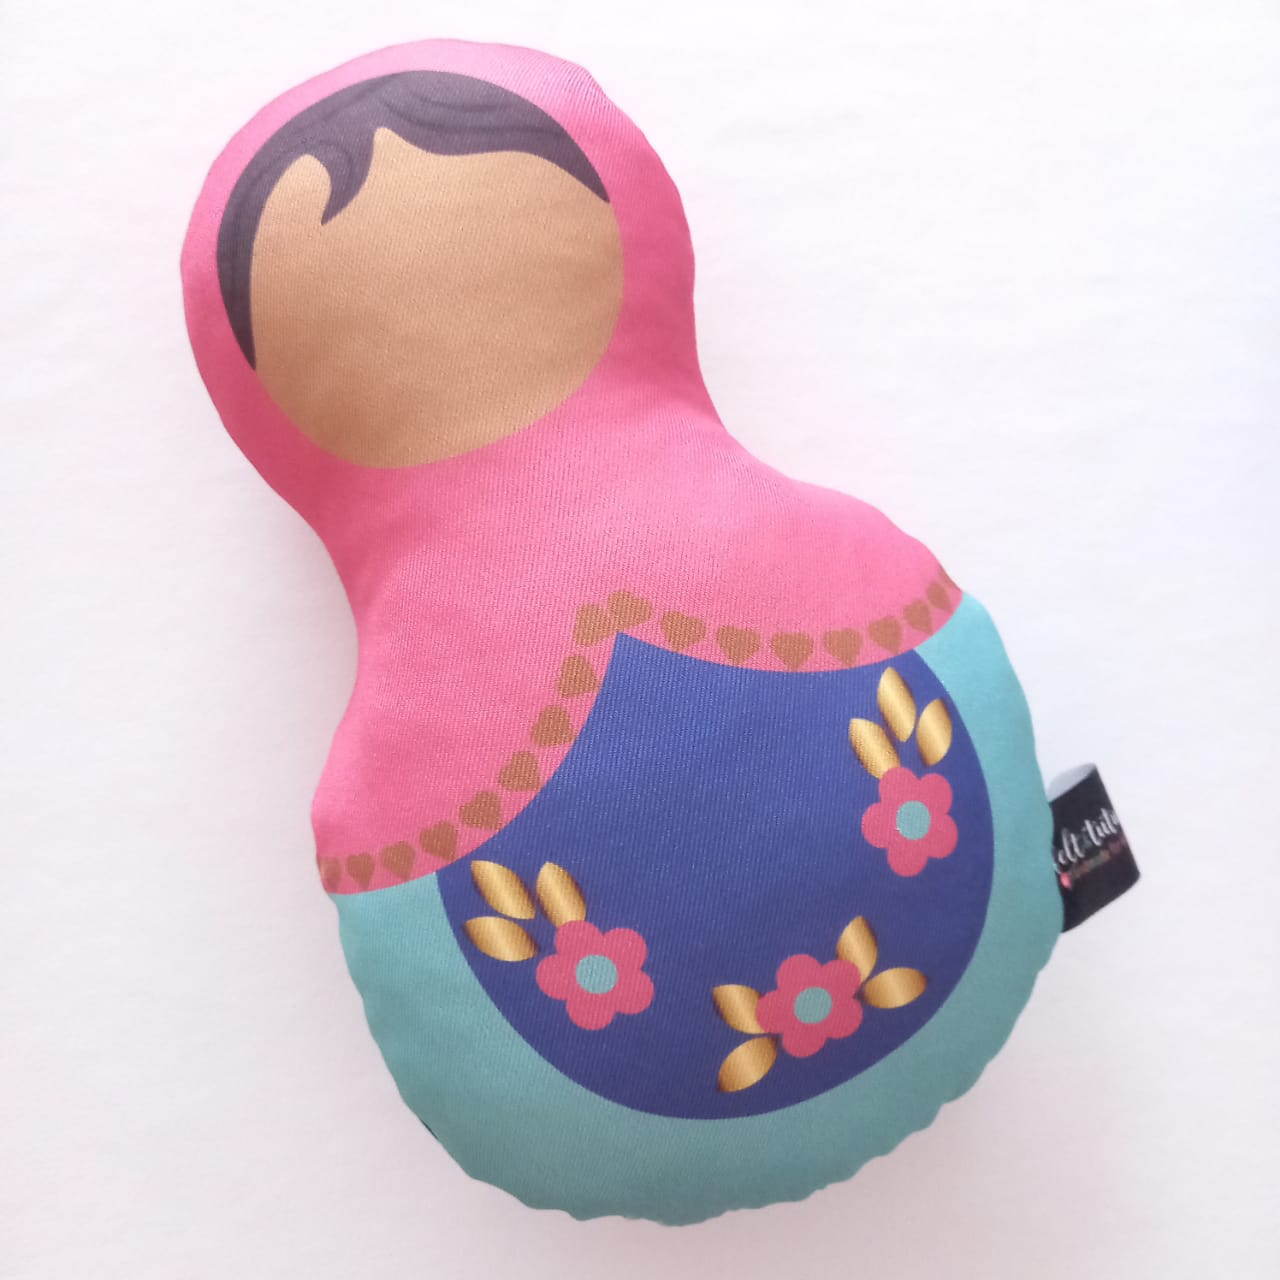 Handmade Hug Dolls - Babushka / Astro Boy